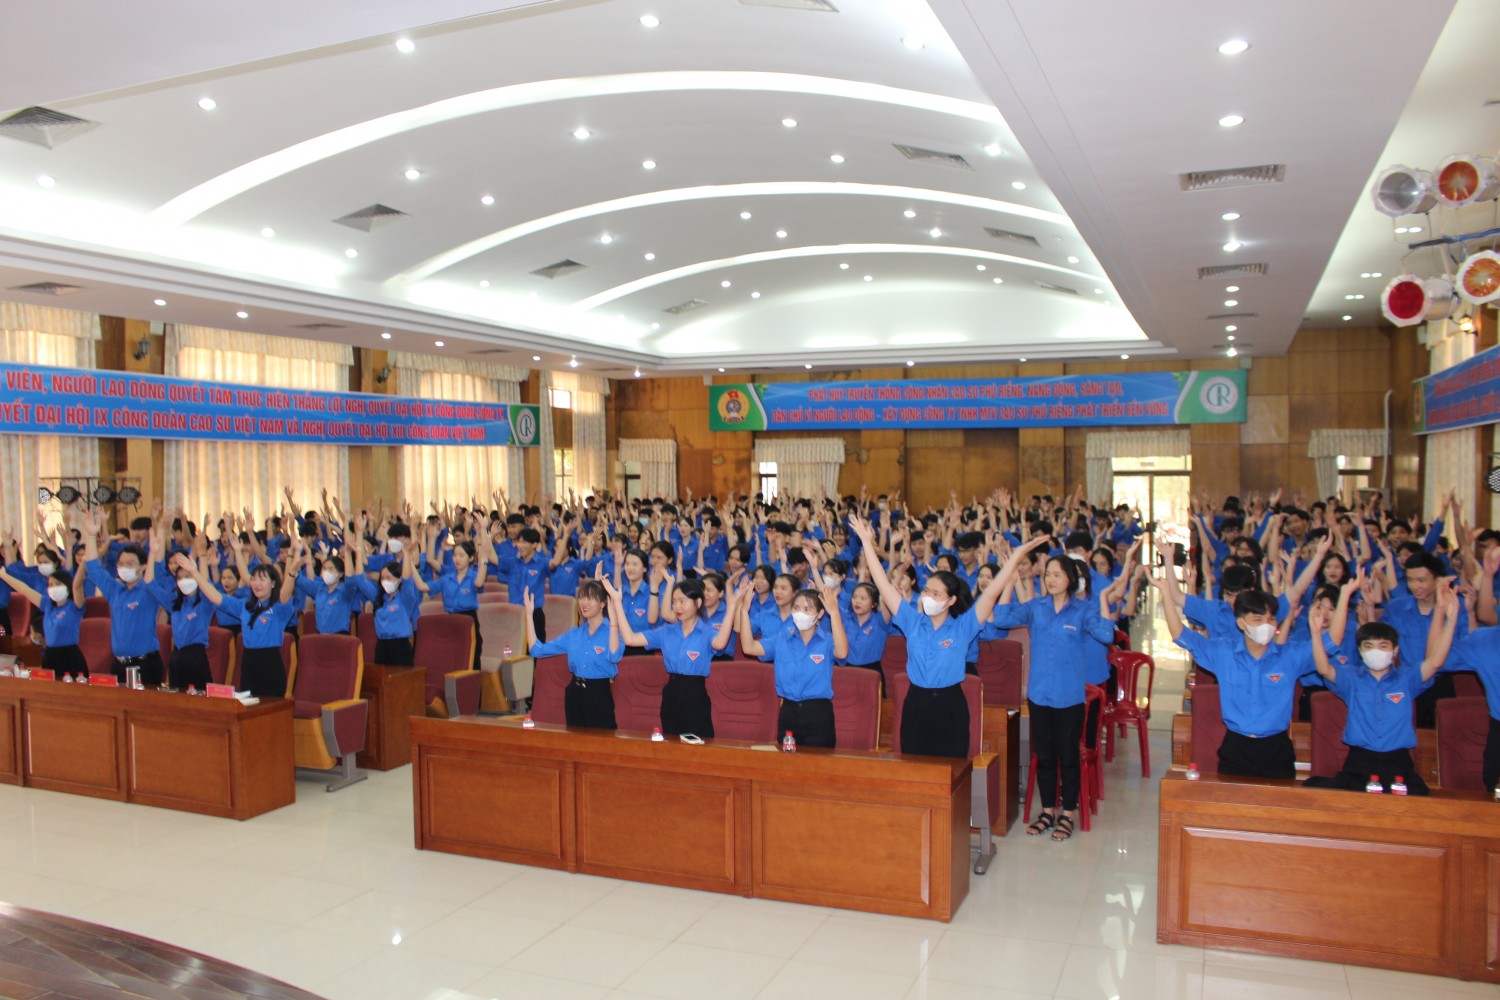 Hơn 400 đoàn viên, thanh niên tham gia buổi nói chuyện chuyên đề “Xây dựng giá trị của thanh niên Phú Riềng trong thời đại mới”